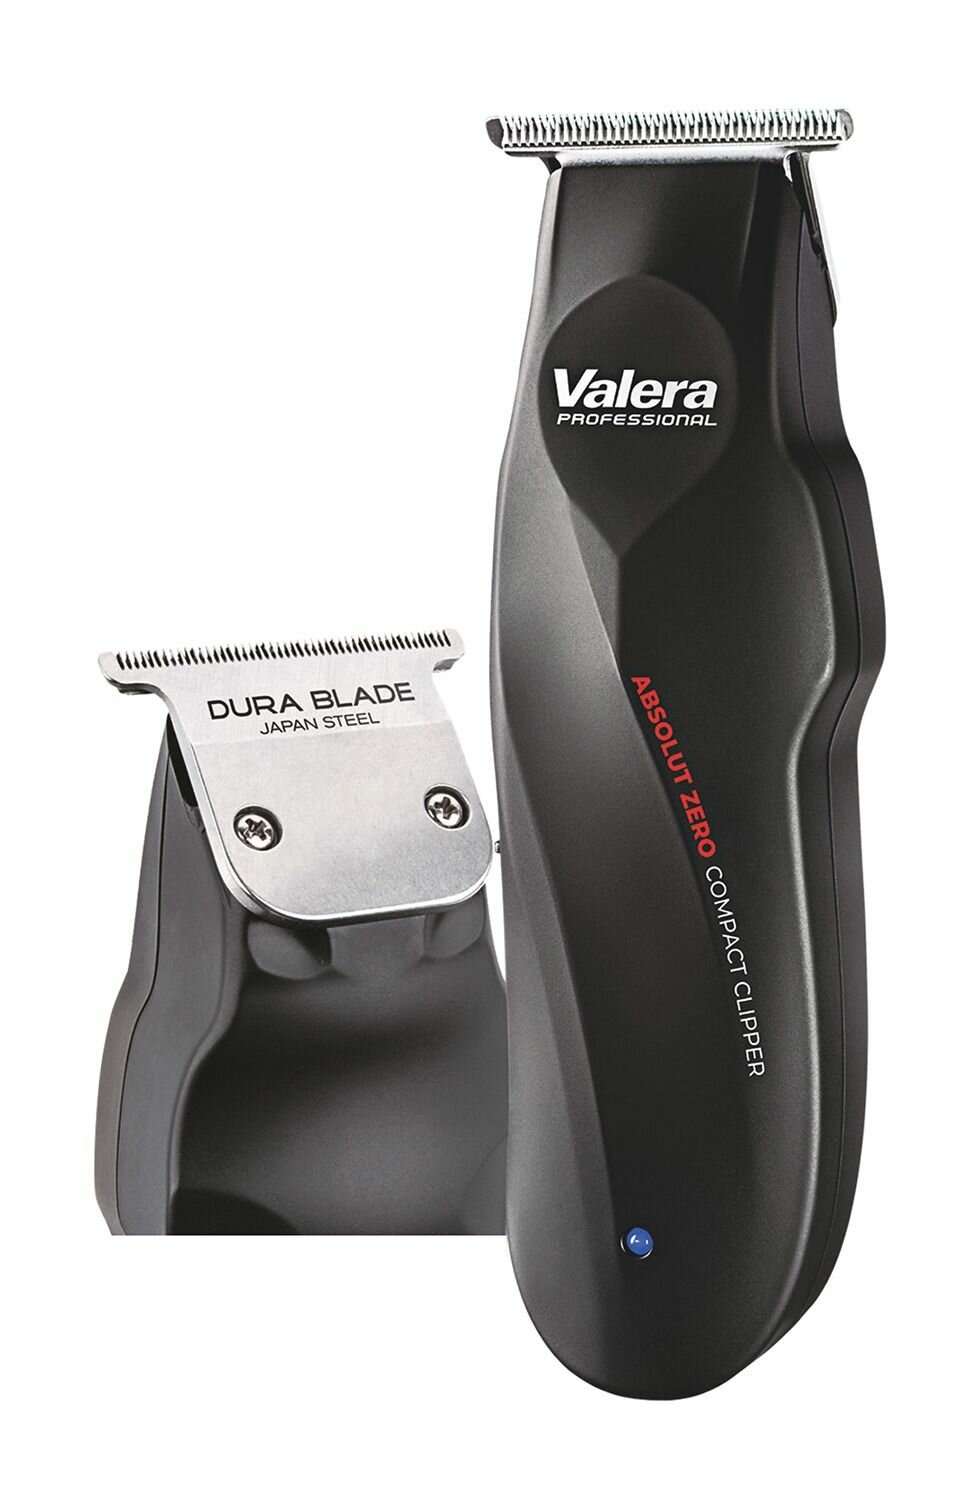 Компактная машинка для стрижки волос Valera Absolut Zero